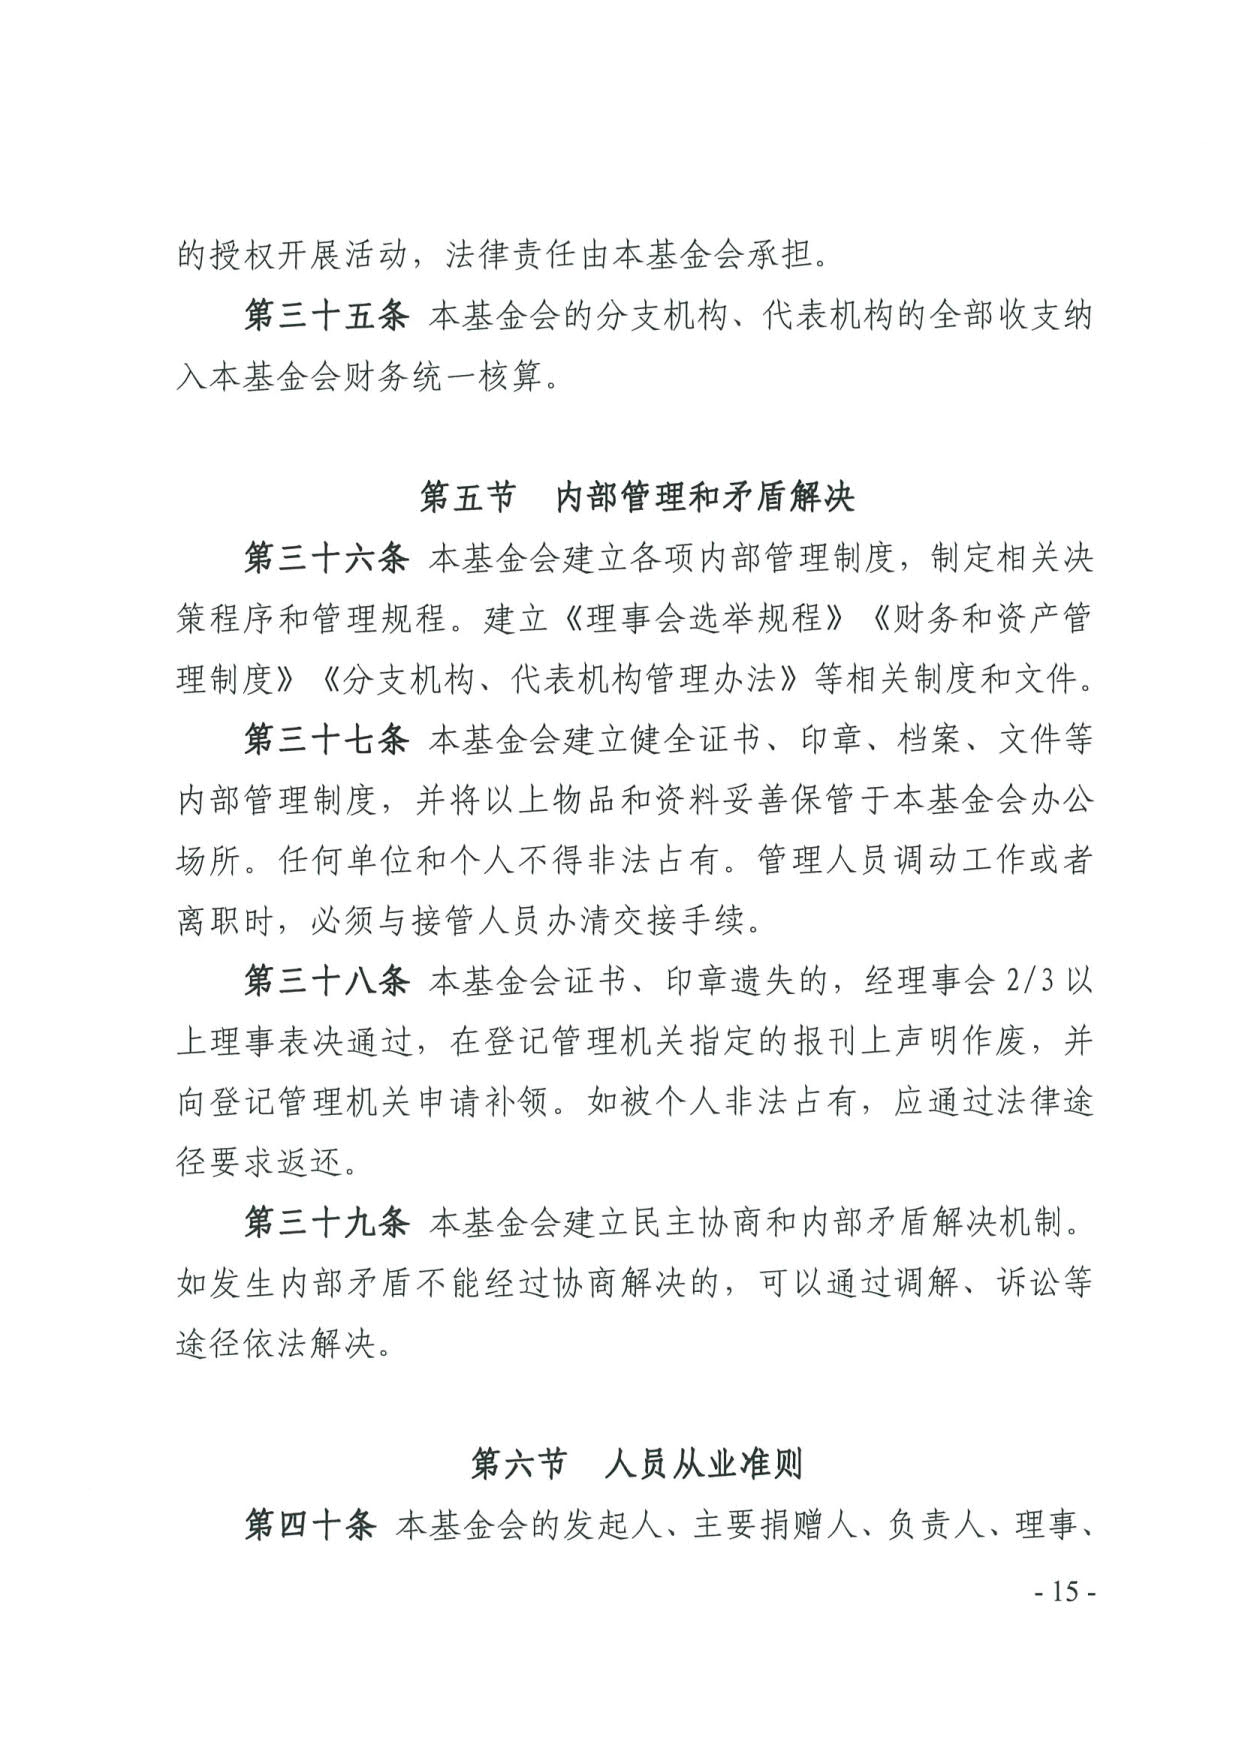 广东省民政厅关于印发《广东省基金会章程示范文本》的通知(4)_15.jpg